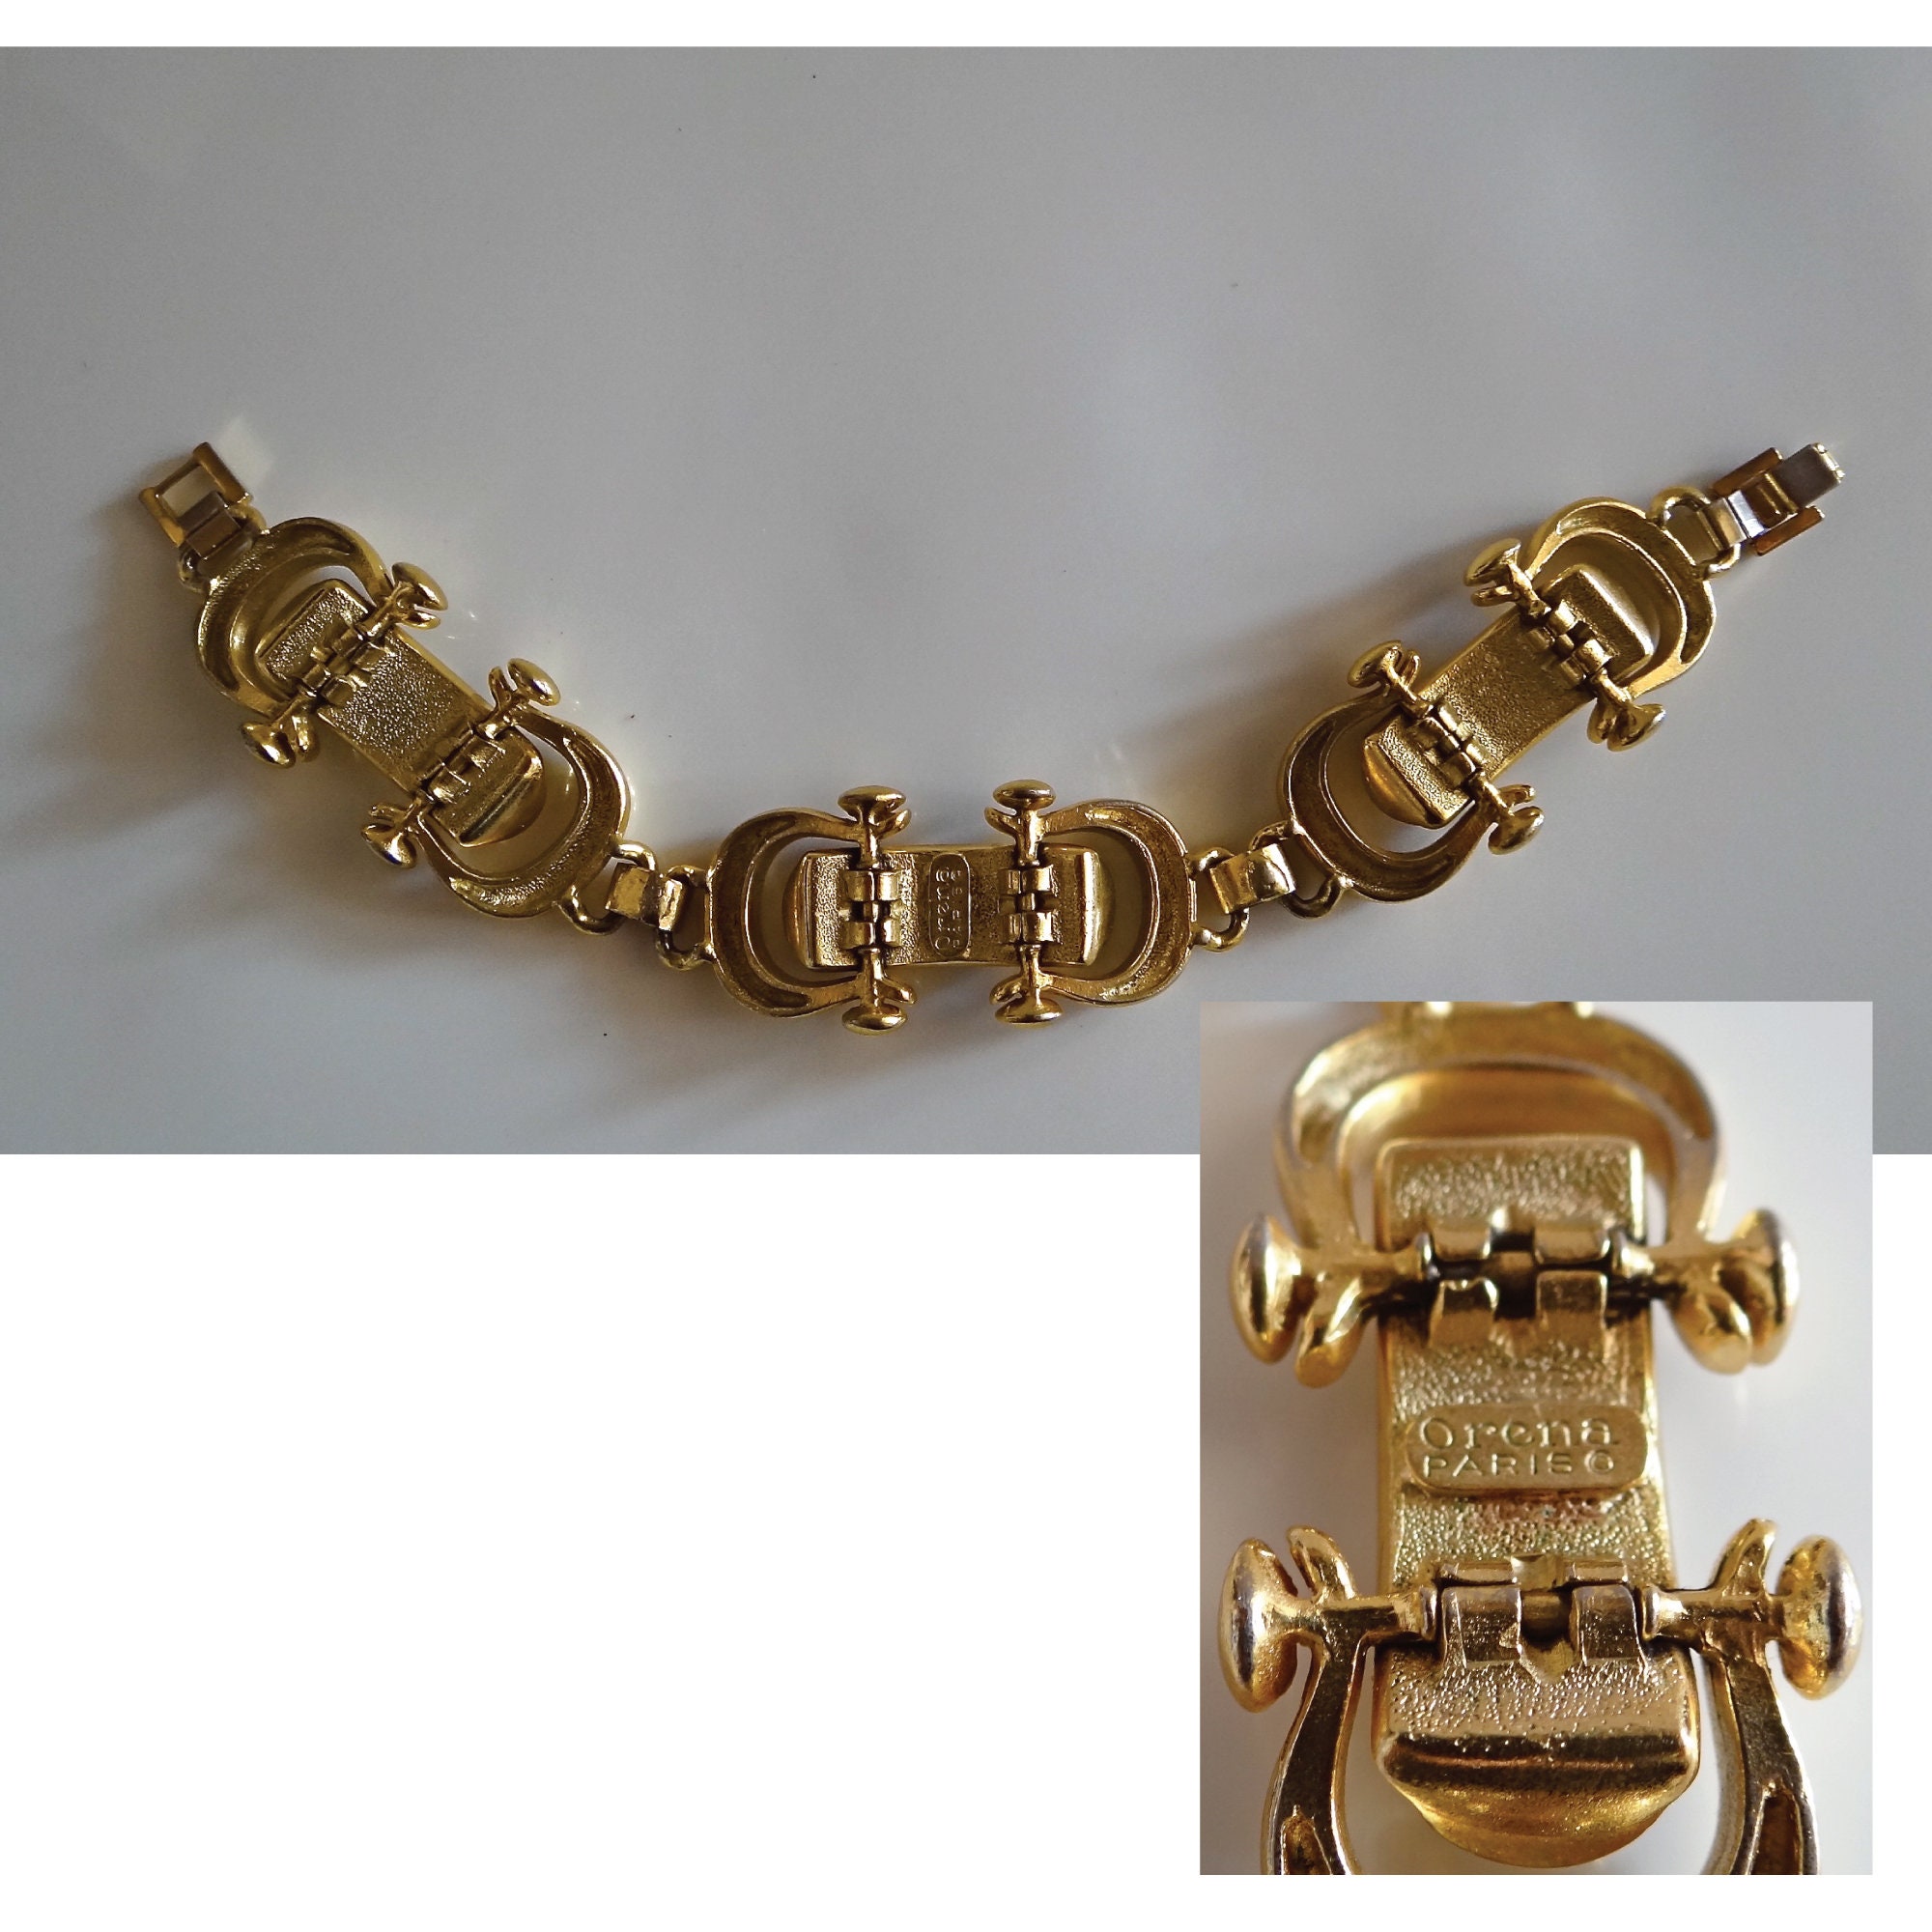 ORÉNA BRACELET VINTAGE Gold and Leather Bracelet 80s Art | Etsy